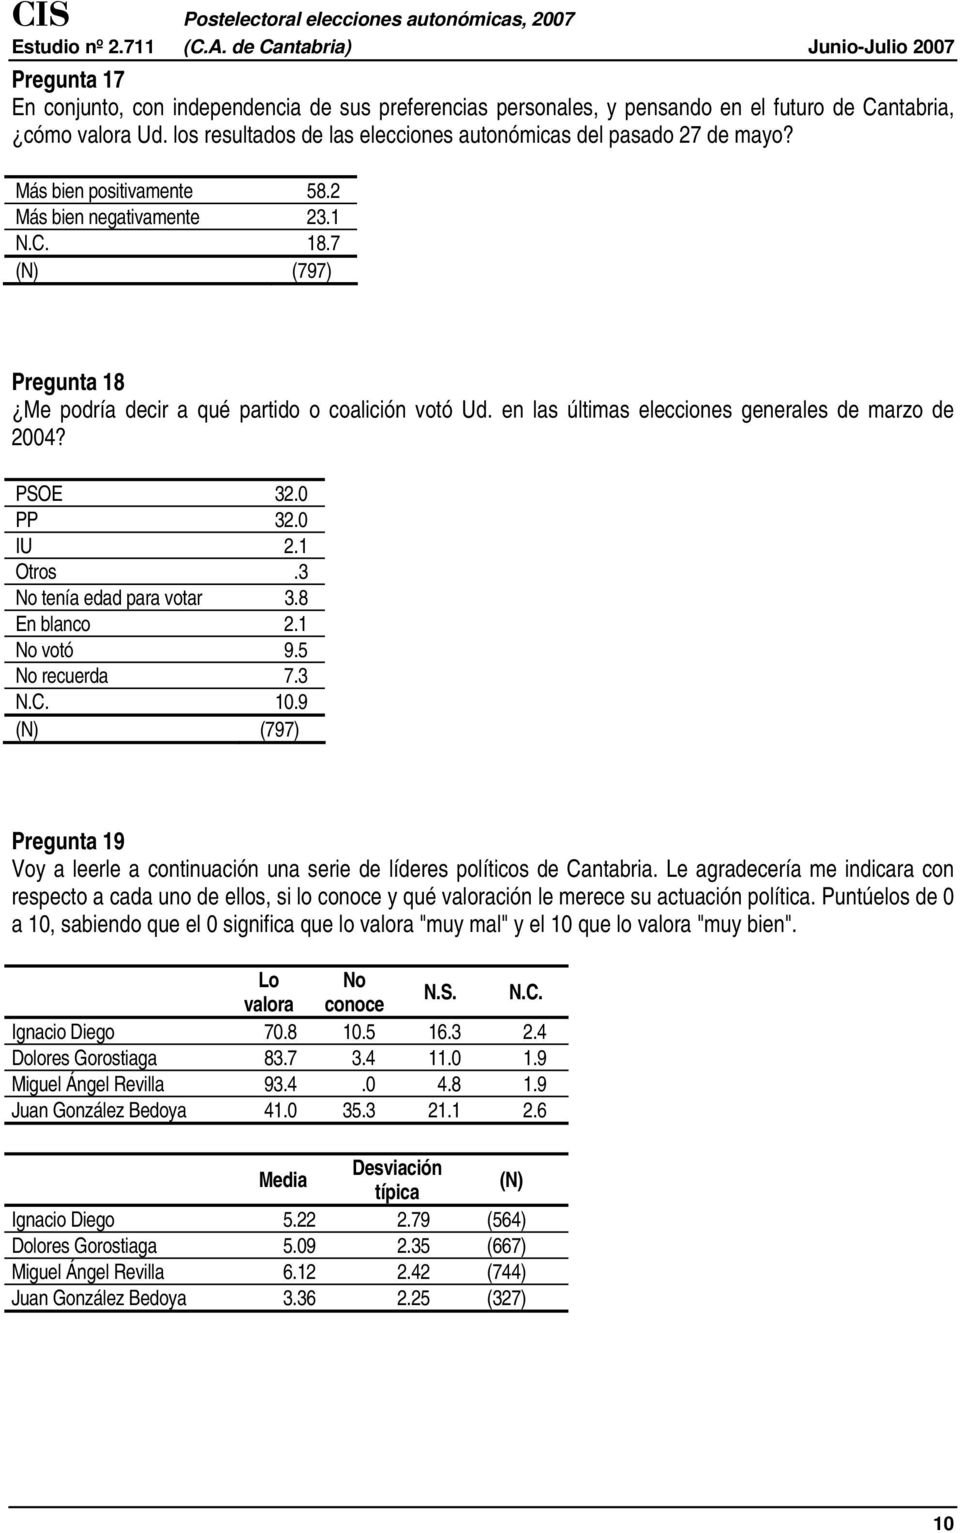 0 IU 2.1 Otros.3 No tenía edad para votar 3.8 En blanco 2.1 No votó 9.5 No recuerda 7.3 N.C. 10.9 Pregunta 19 Voy a leerle a continuación una serie de líderes políticos de Cantabria.